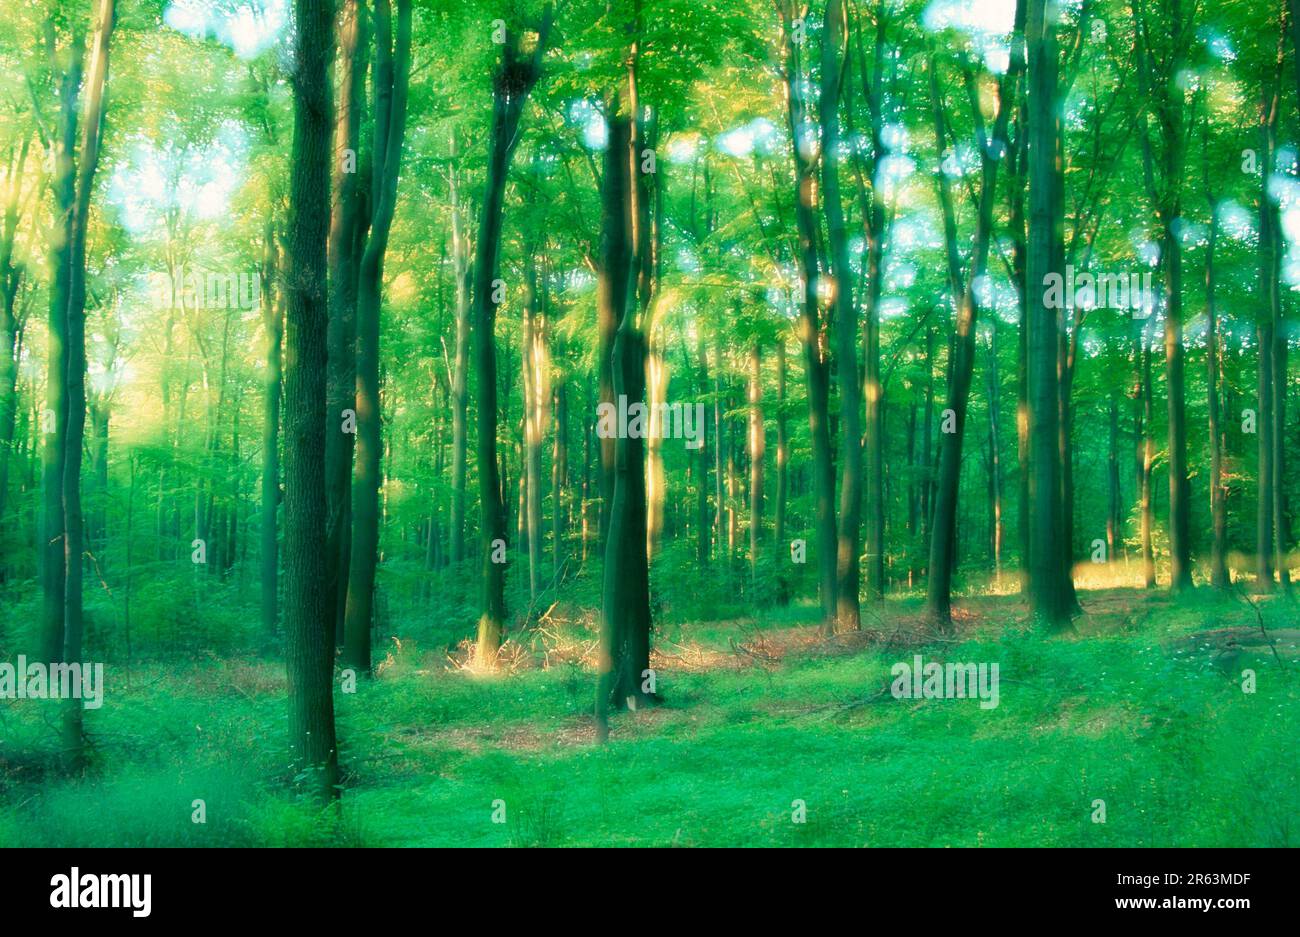 Foresta decidua alla luce del mattino, in primavera, Renania settentrionale-Vestfalia, Germania (Fagus sylvatica), Laubwald im Morgenlicht, Im Fruehling Foto Stock